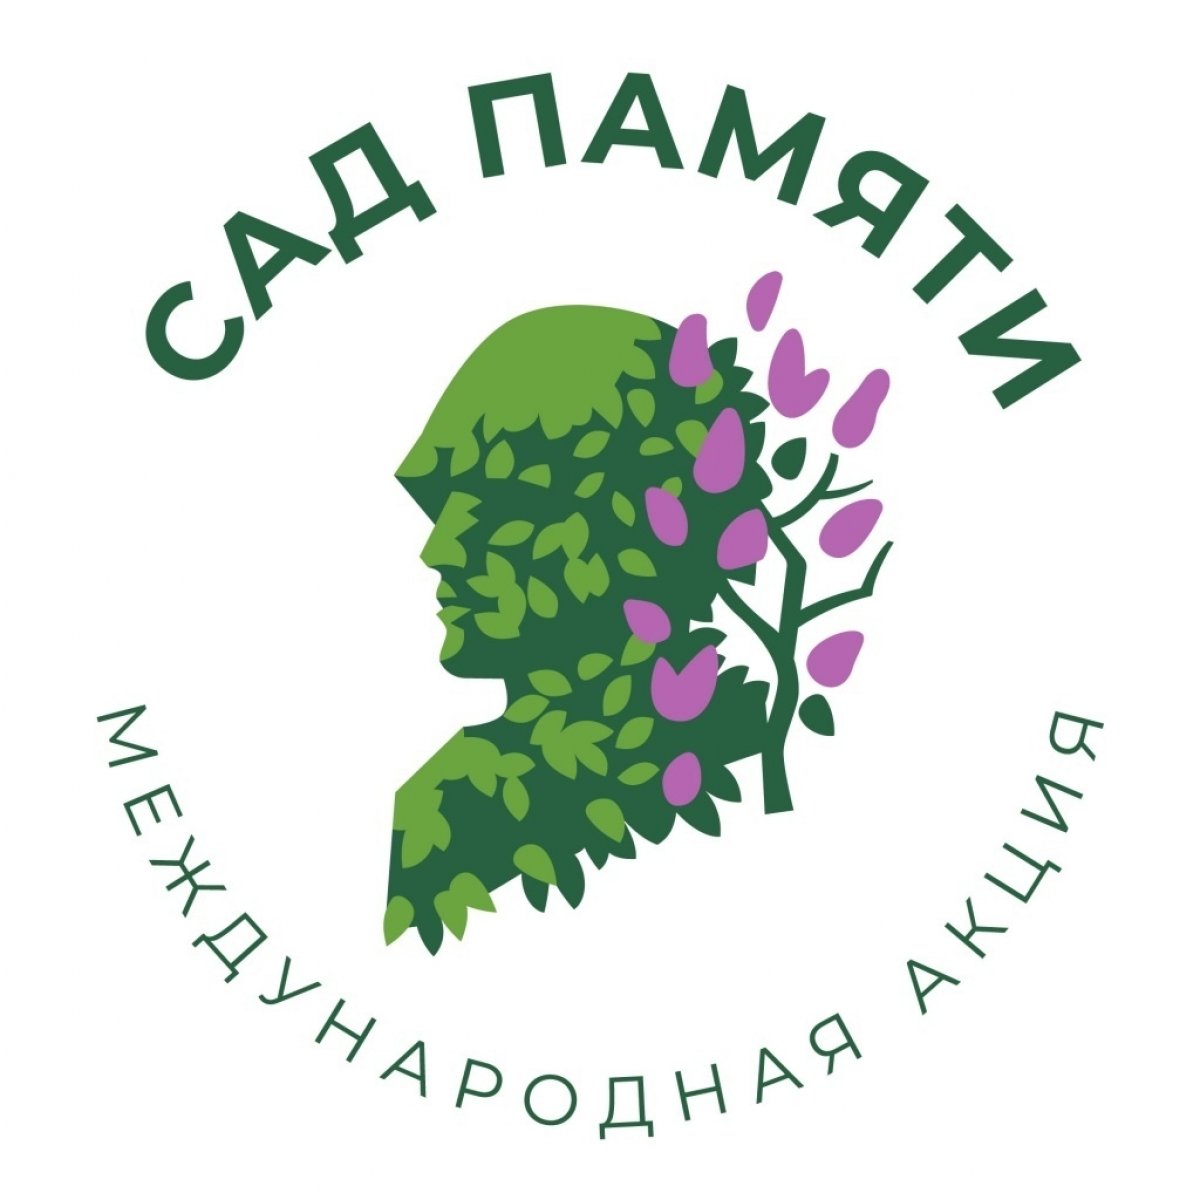 В рамках международной акции "Сад Памяти" планируется высадить по всей России 27 миллионов деревьев в память о каждом погибшем в годы войны🌾